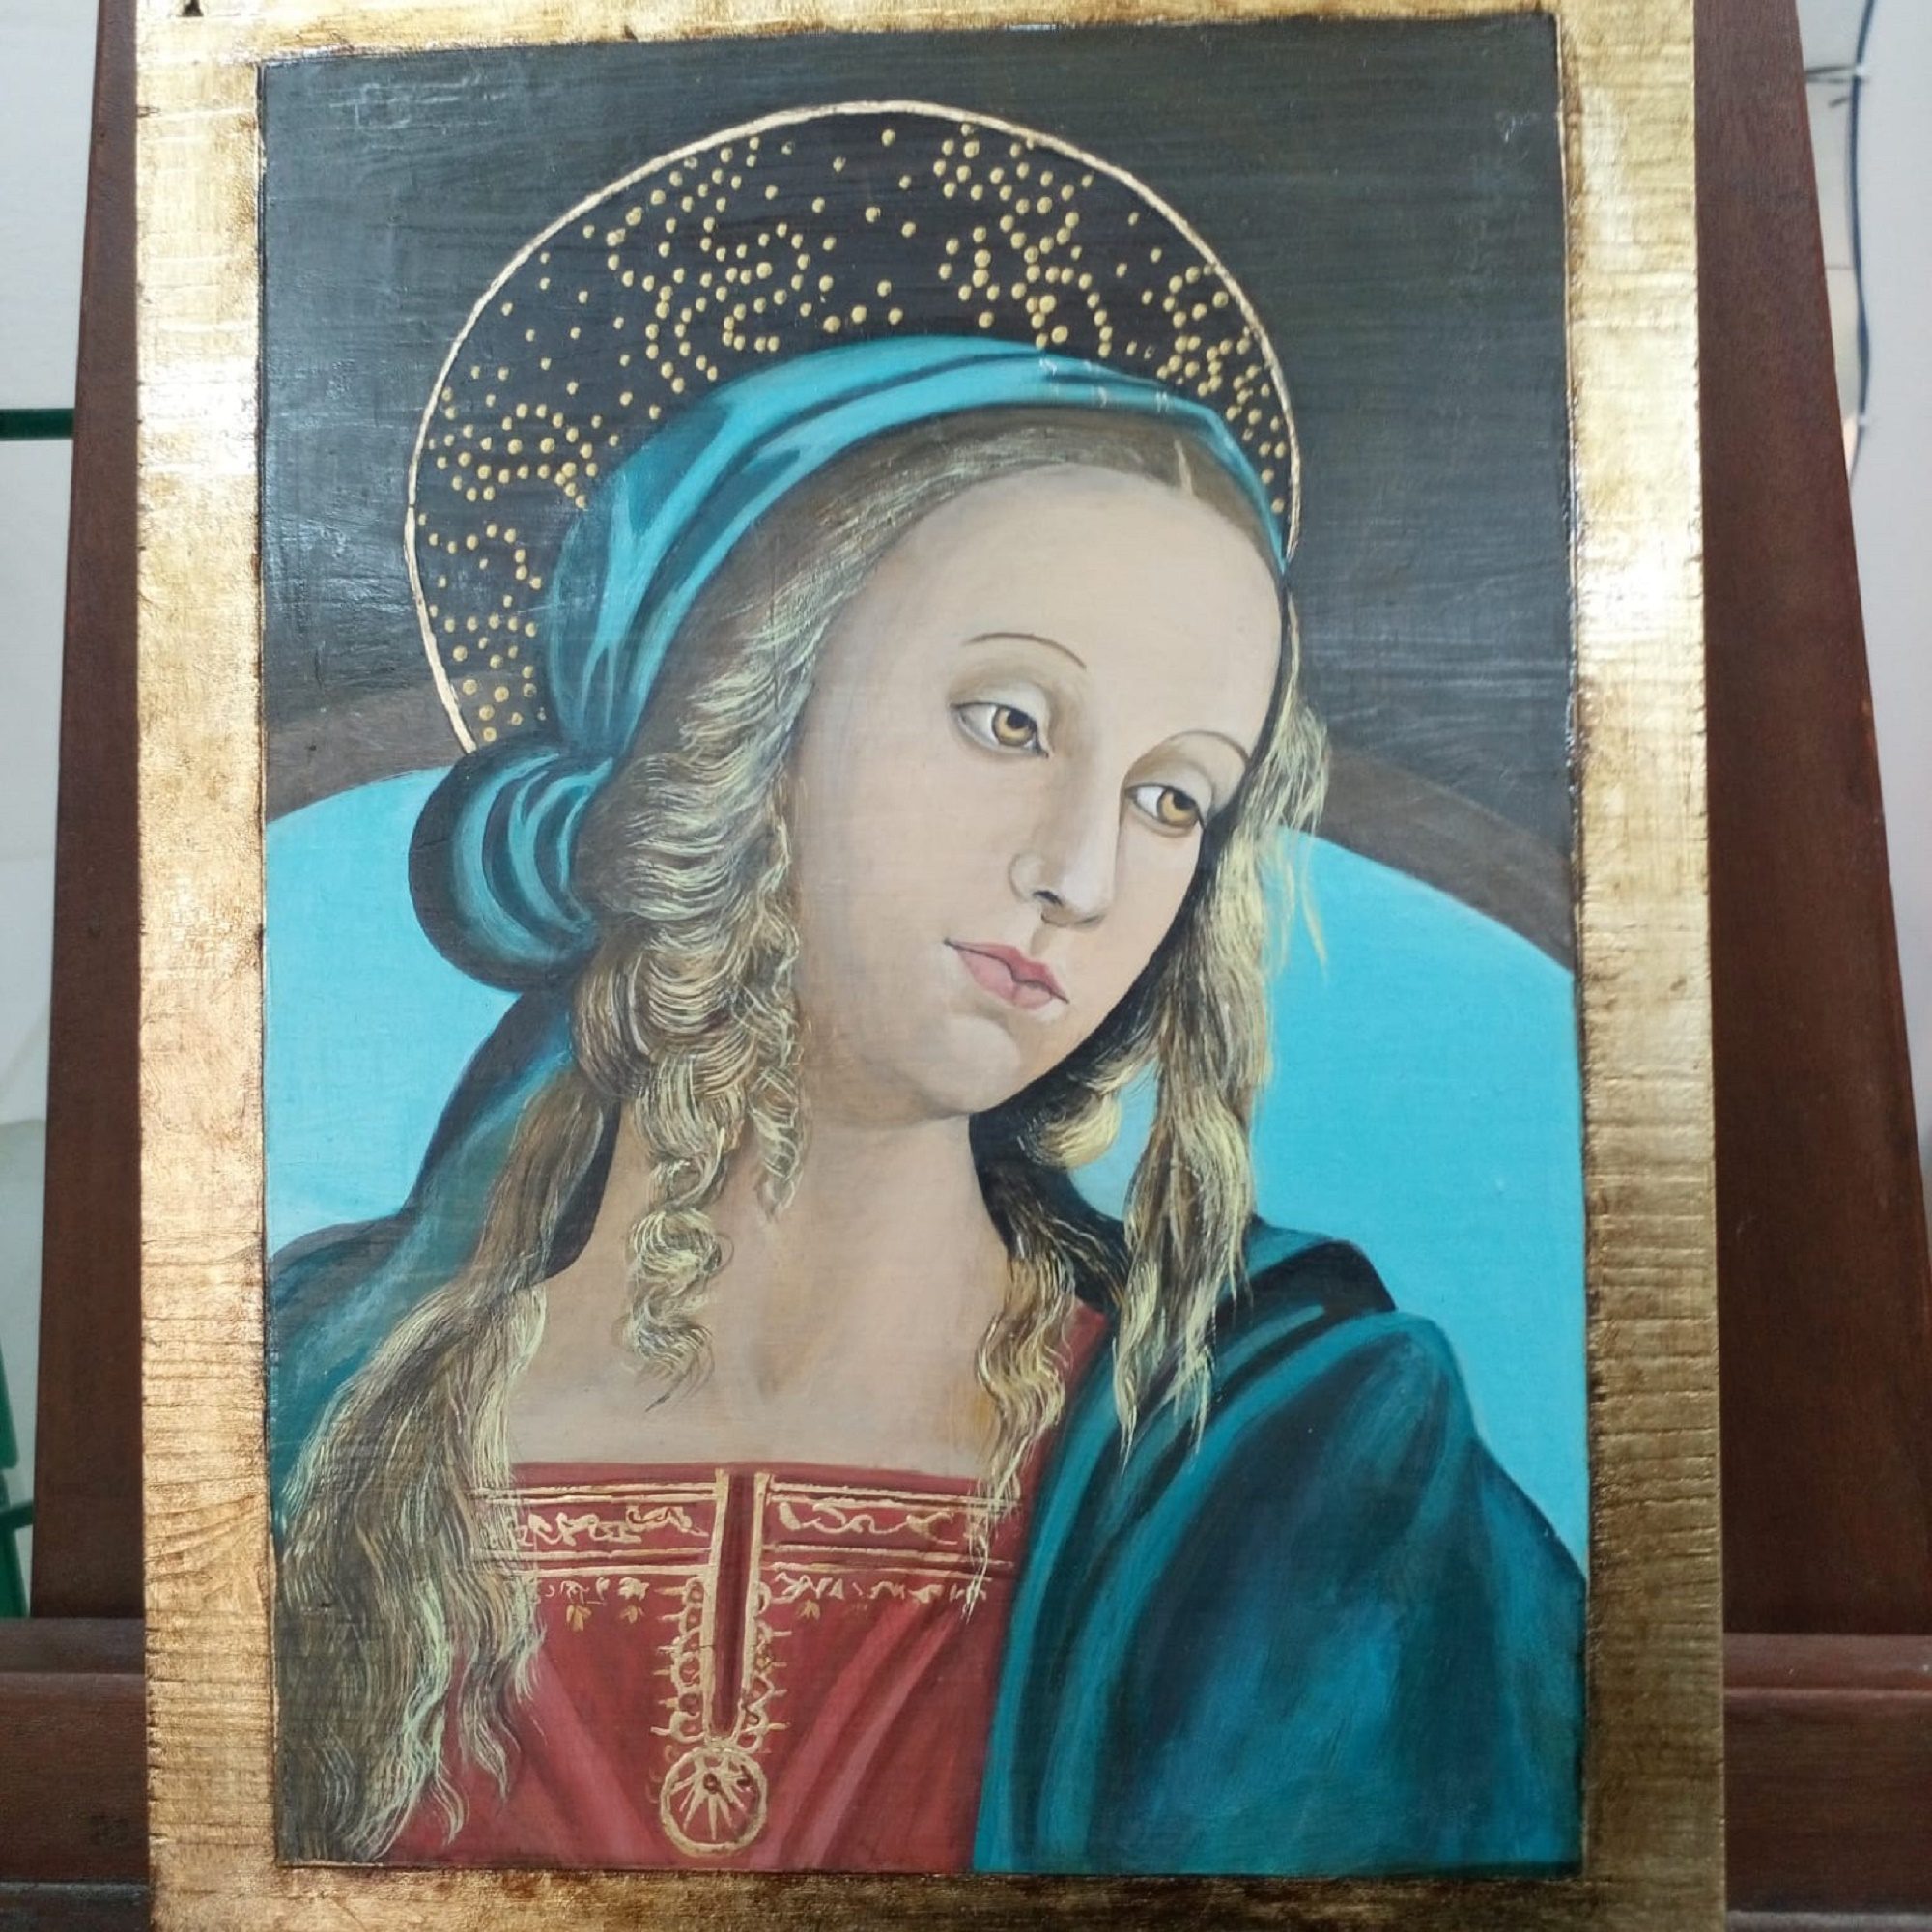 Per info e acquisto: <a href="mailto:studioartelidiavici@gmail.com">studioartelidiavici@gmail.com</a><br>Particolare della Madonna in Trono di Pietro Perugino, olio su tavola 33 x 27 cm.